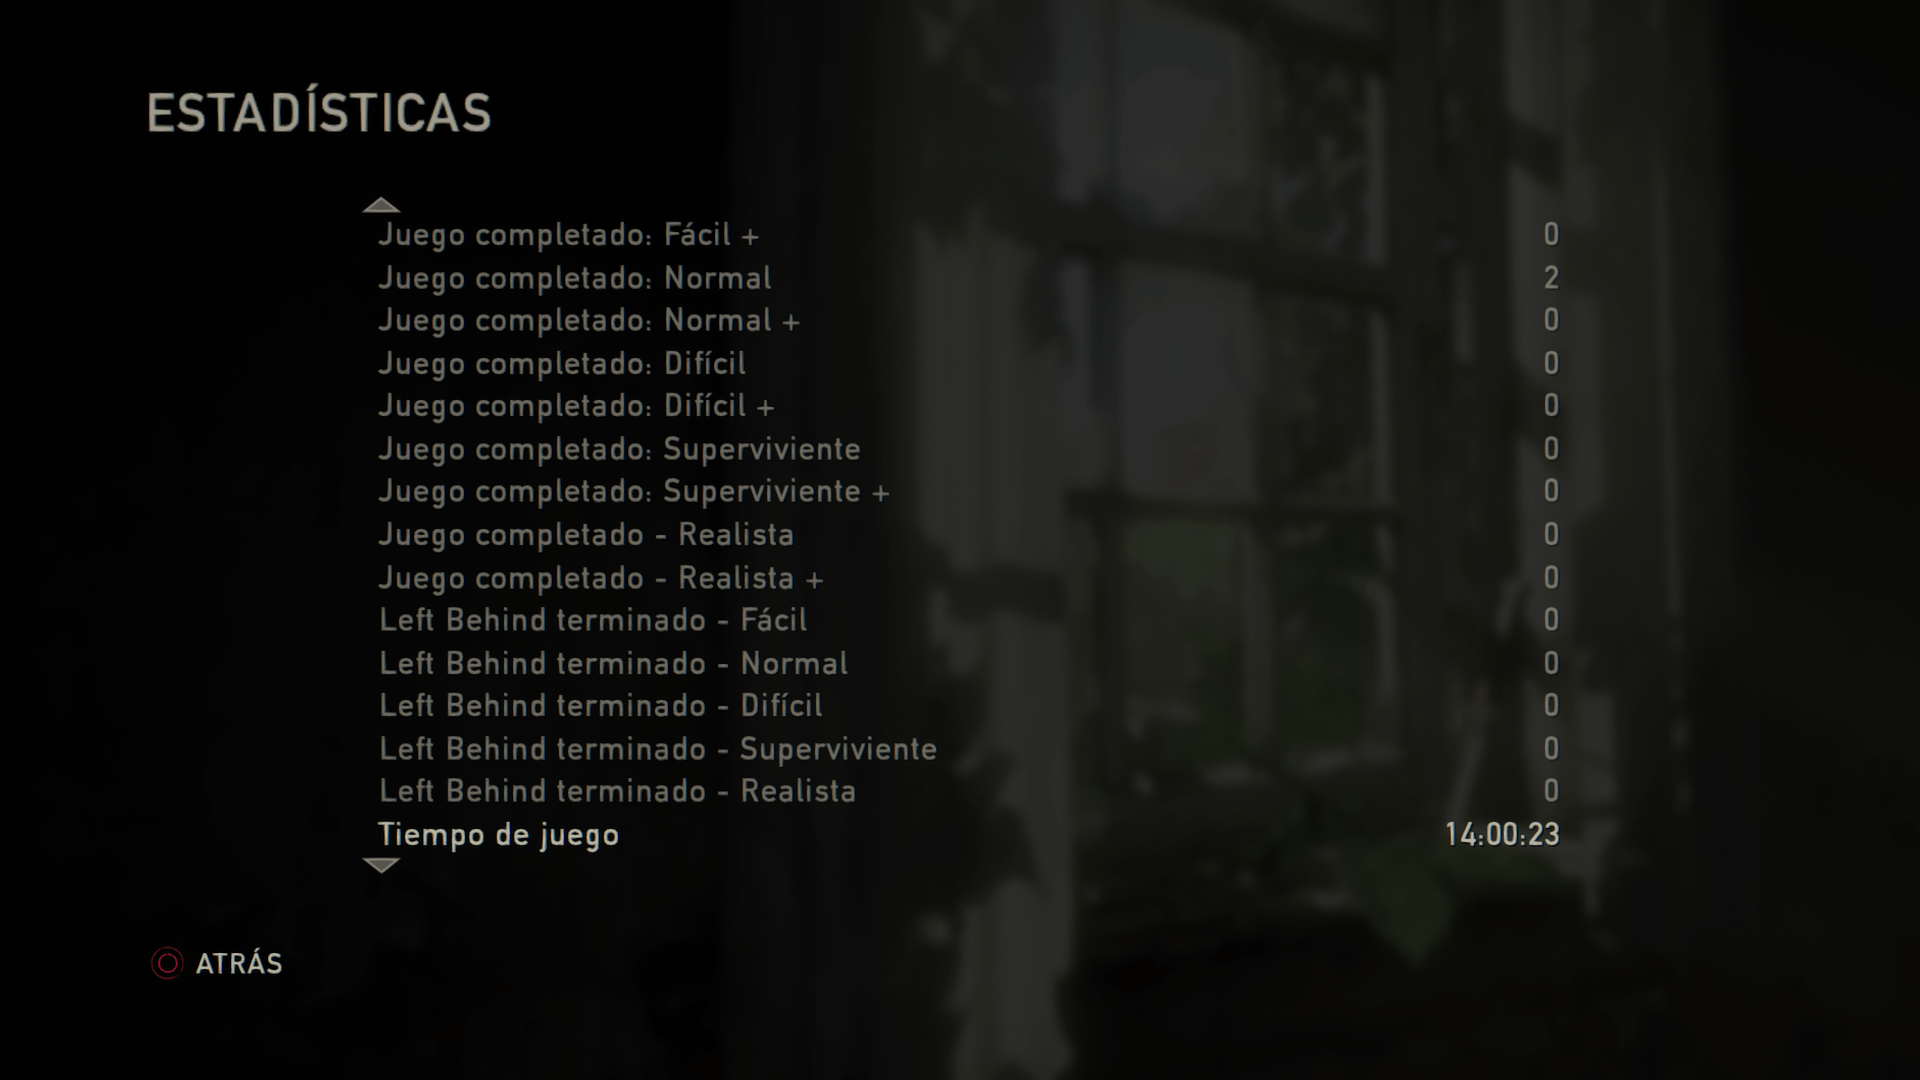 The Last of Us - Estadísticas de juego